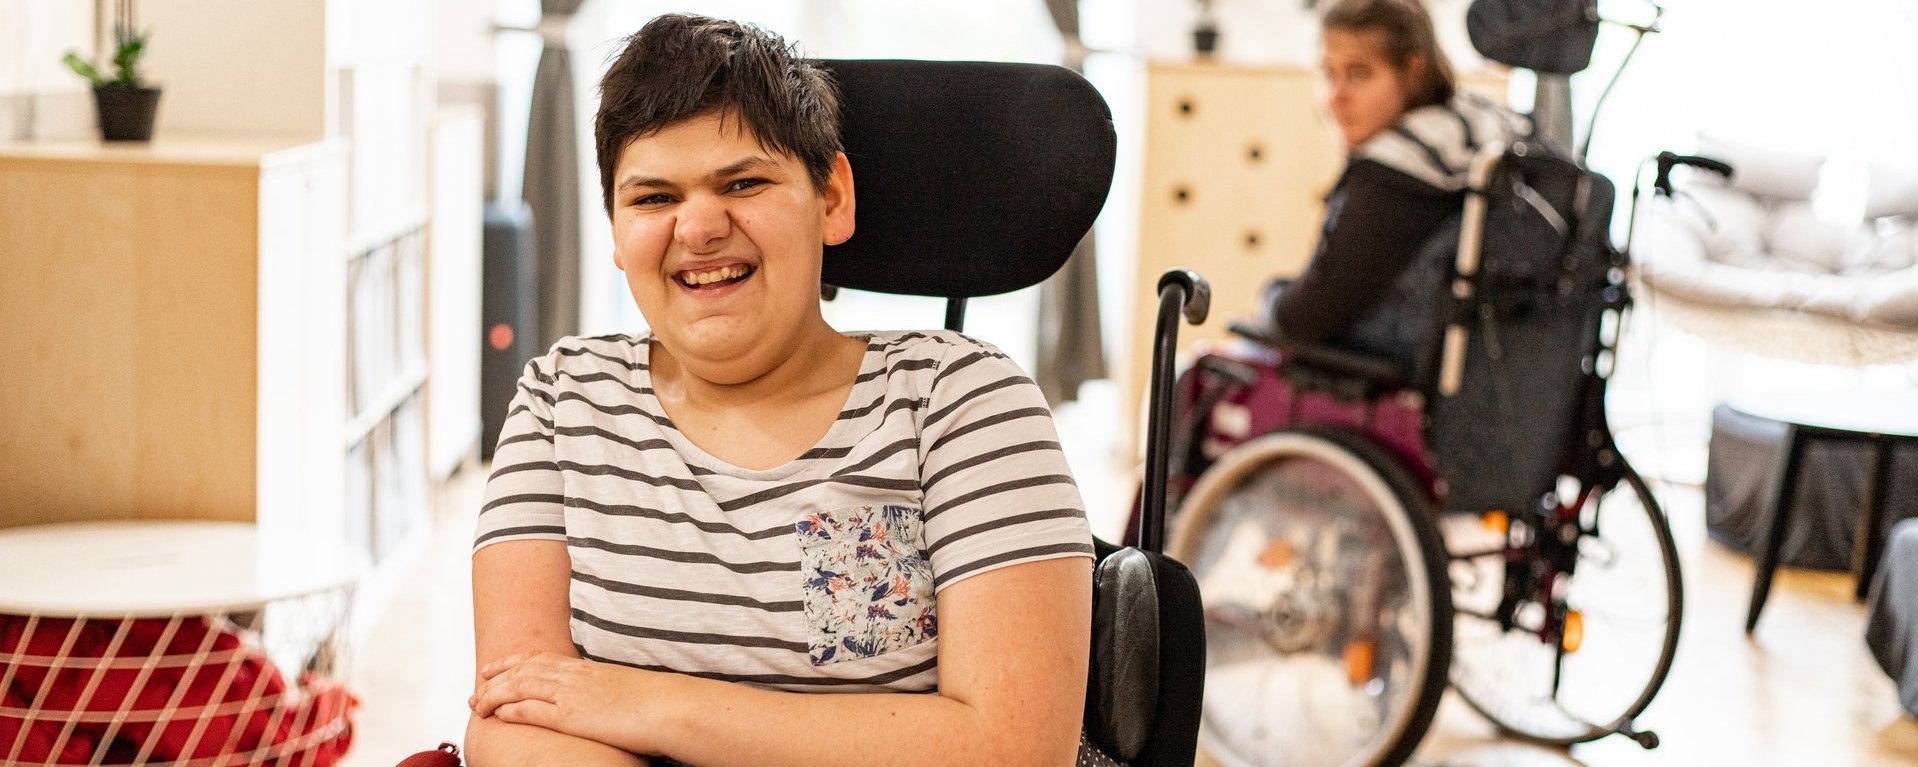 Eine junge Frau im Rollstuhl lacht